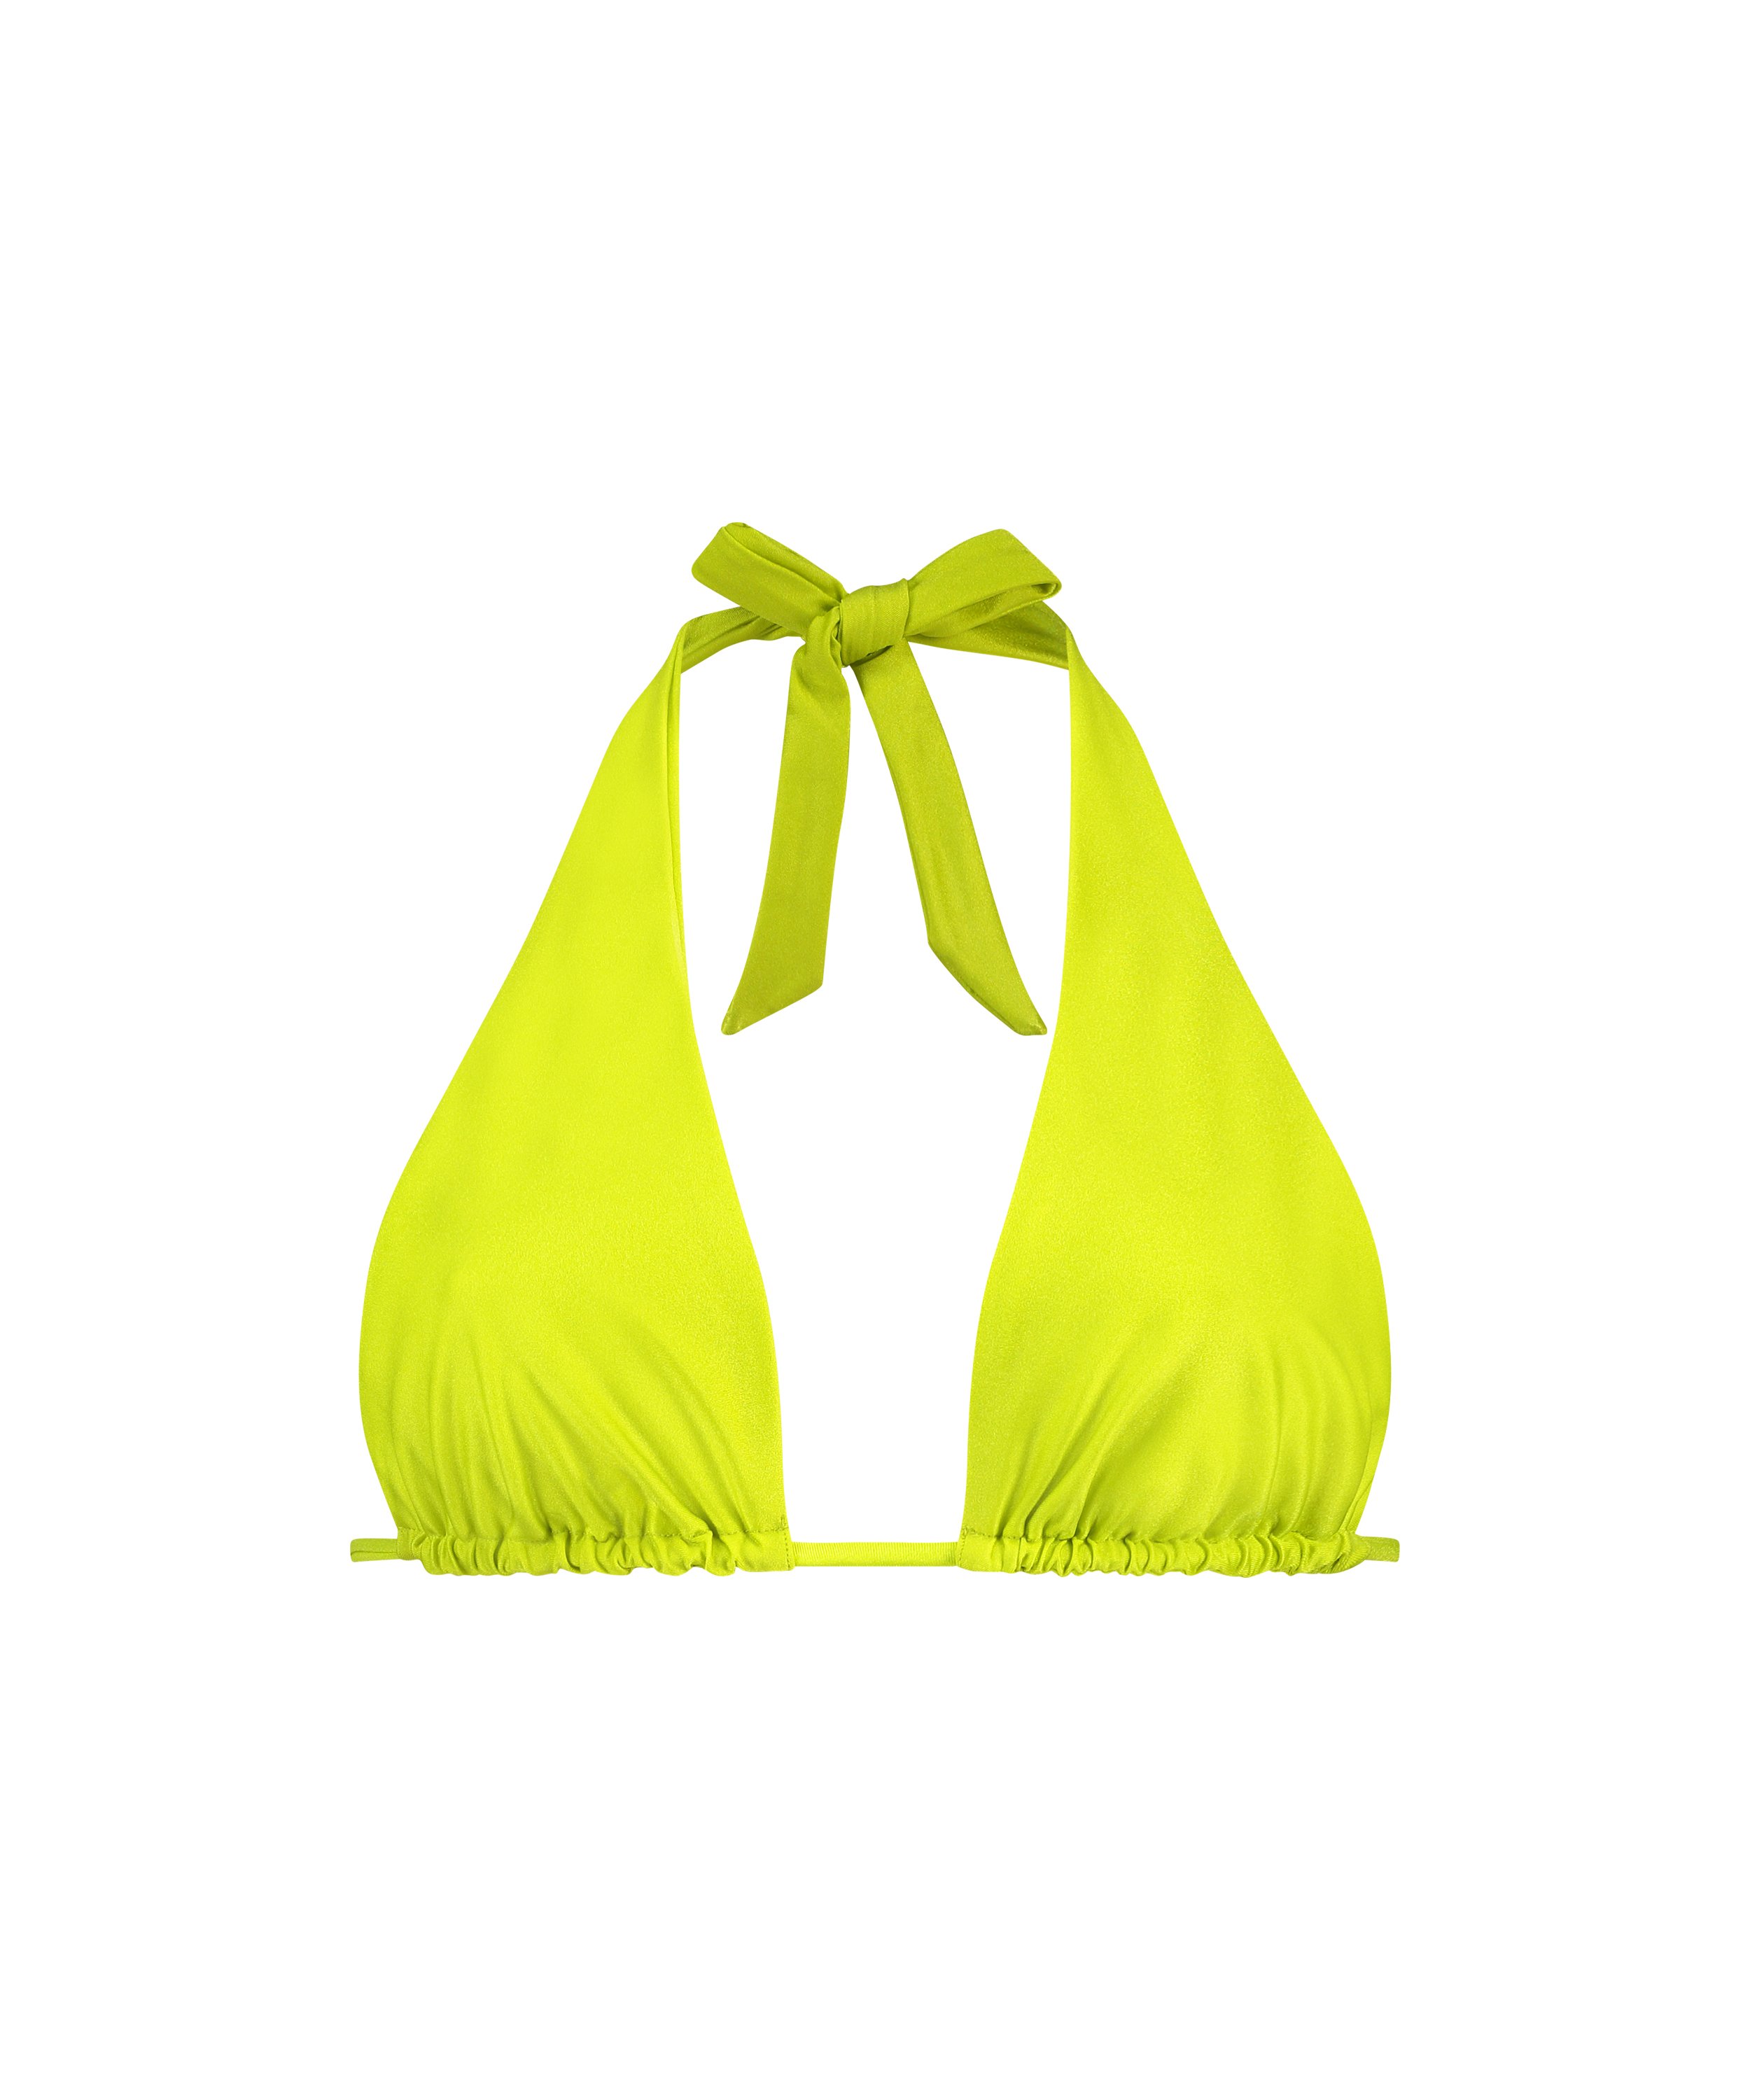 Luxe Multi Way Triangle Bikini Top, Green, main